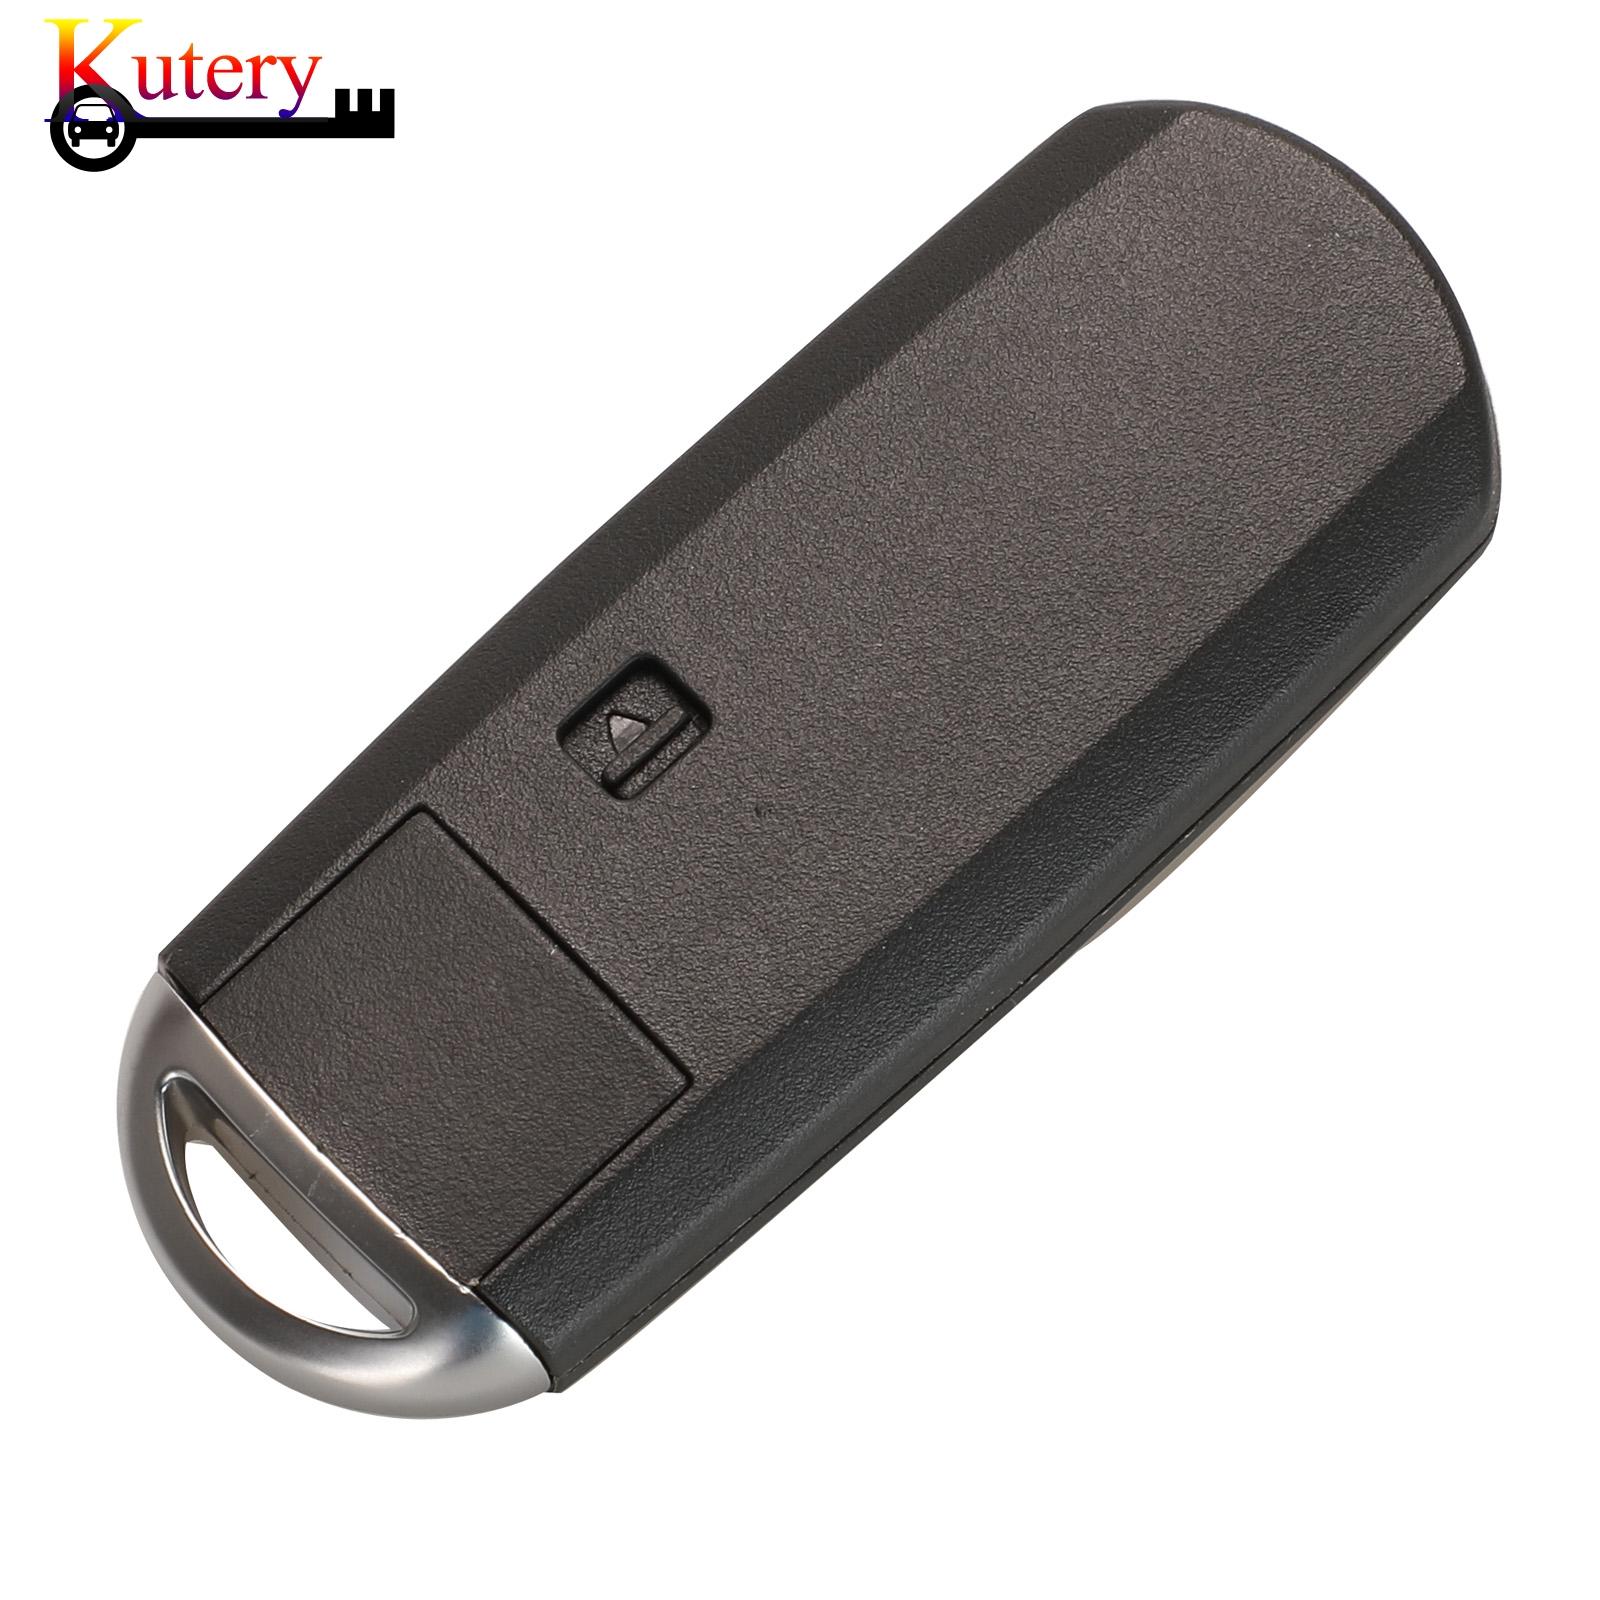 Изображение товара: Kutery дистанционный умный Автомобильный ключ для MAZDA CX-3 Axela CX-5 Atenza 2/3 кнопки 433 МГц ID49 чип SKE13E-01 SKE13E-02